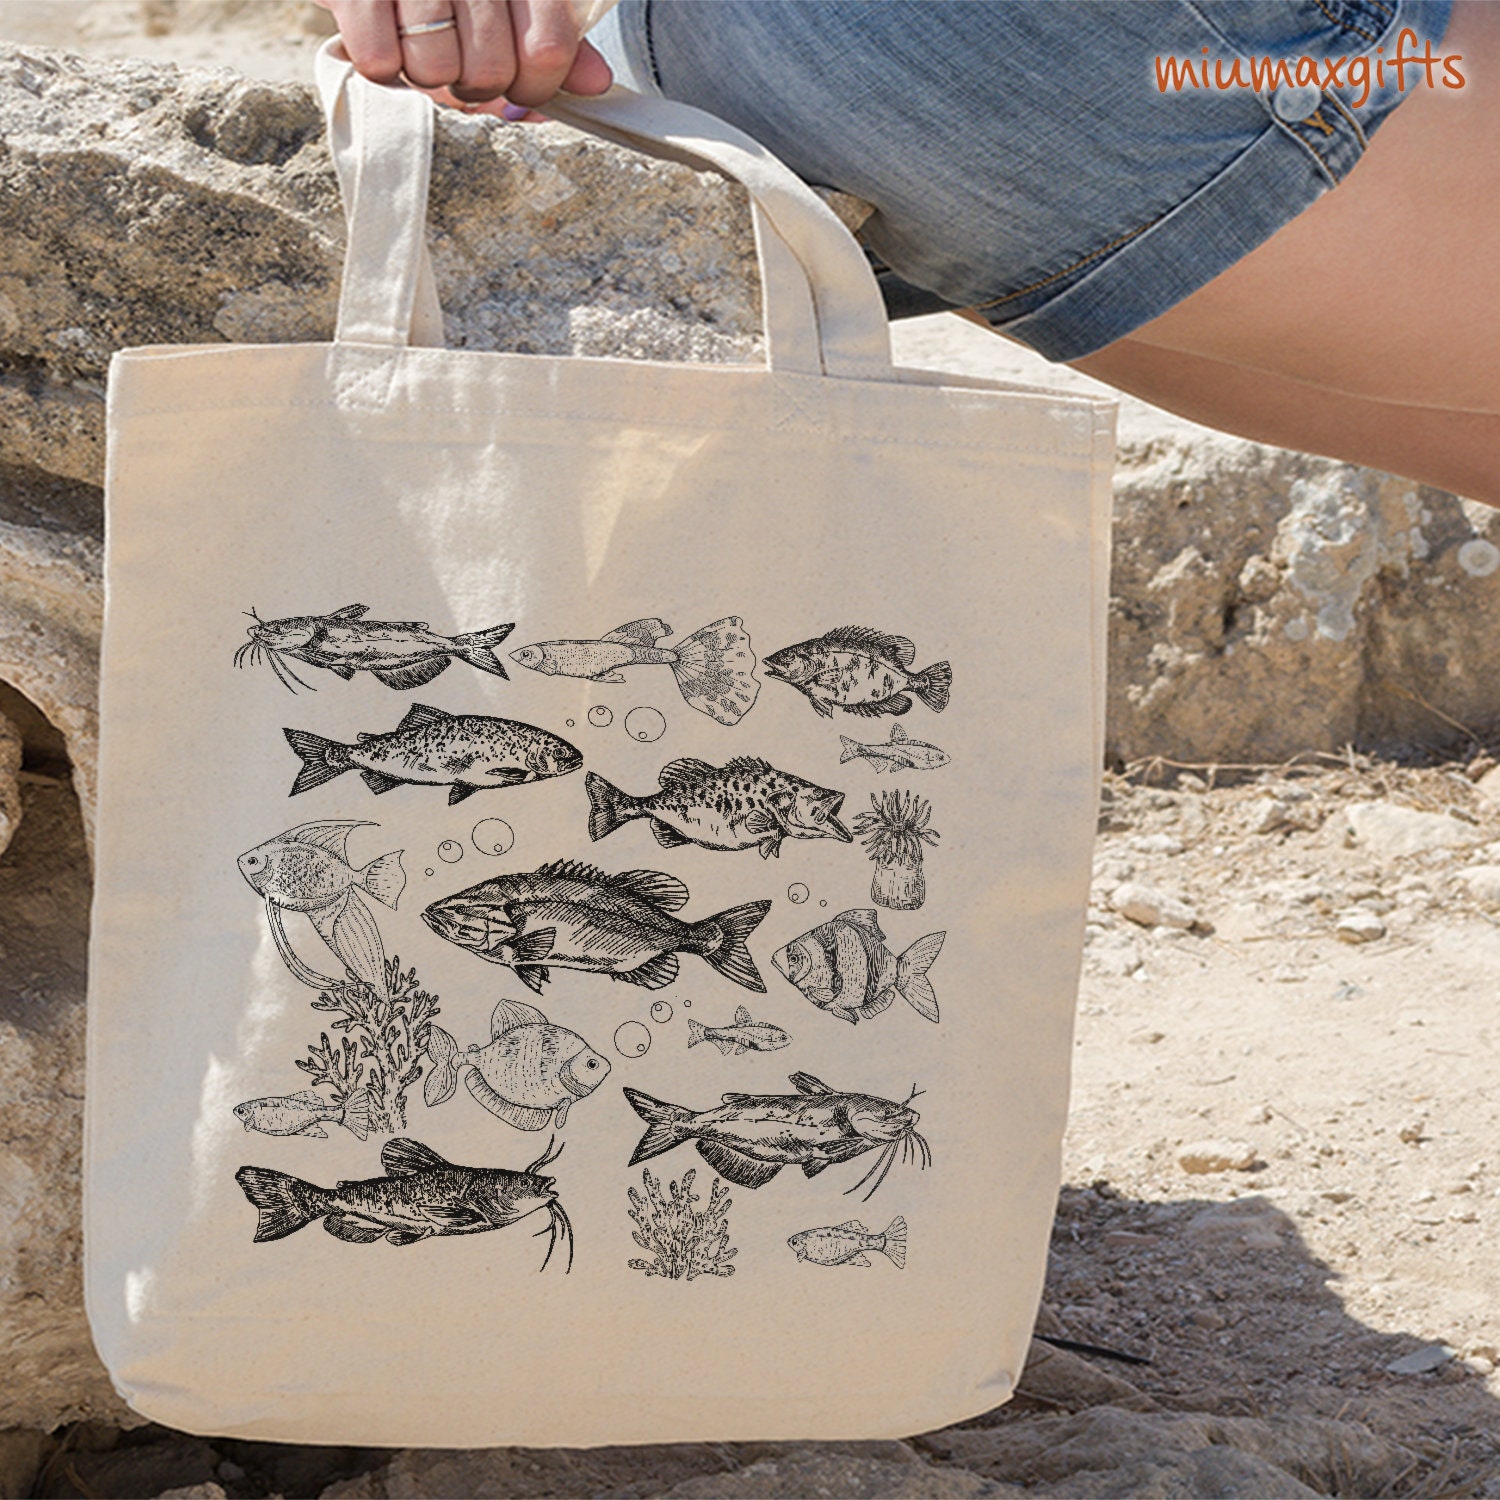 Fish Cotton Tote Bag, Fish Tote Bag, Fish Bag, Design by